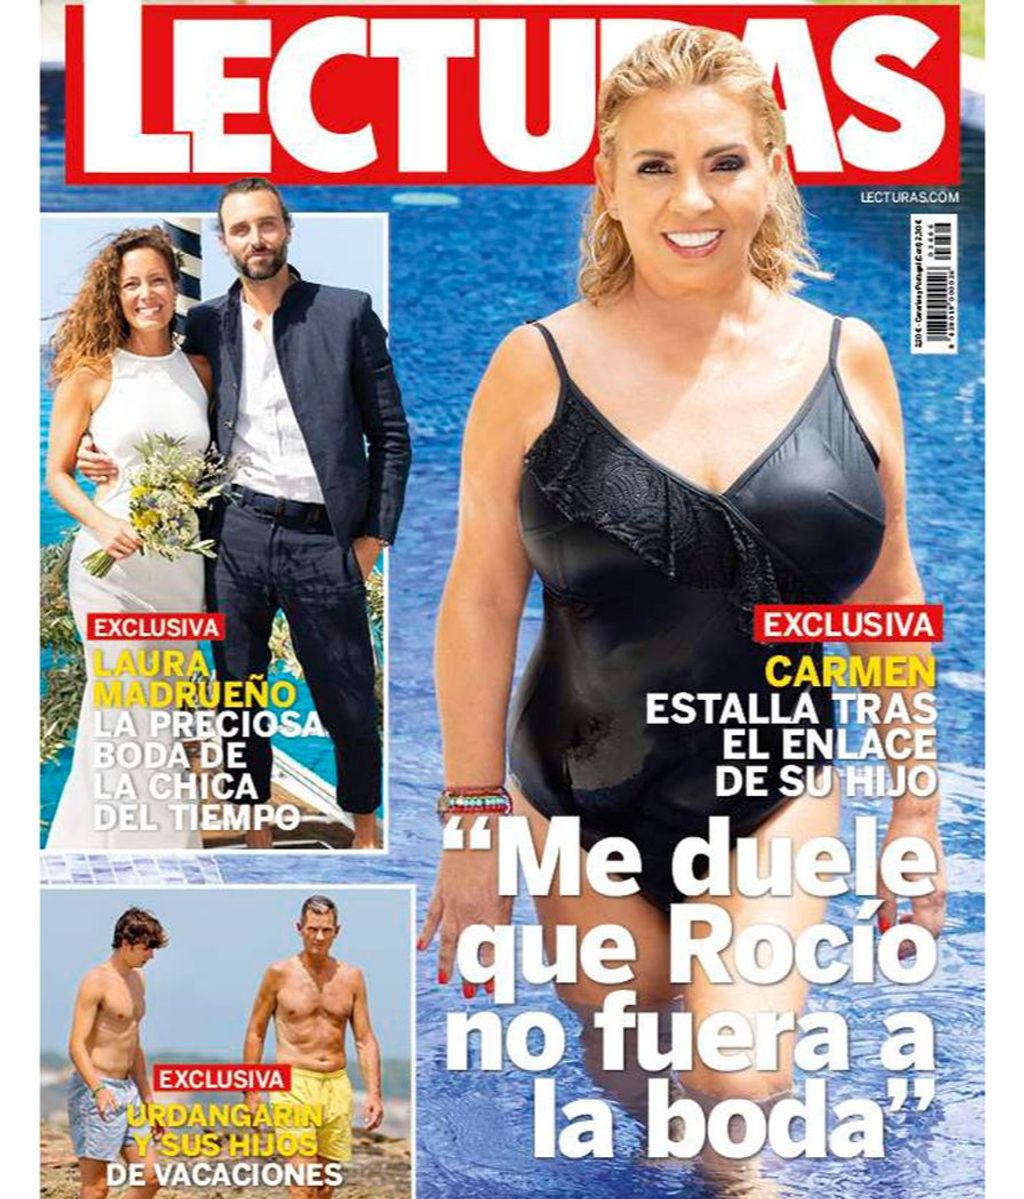 La boda de Laura Madrueño y Álvaro Puerto en la portada de la revista 'Lecturas'